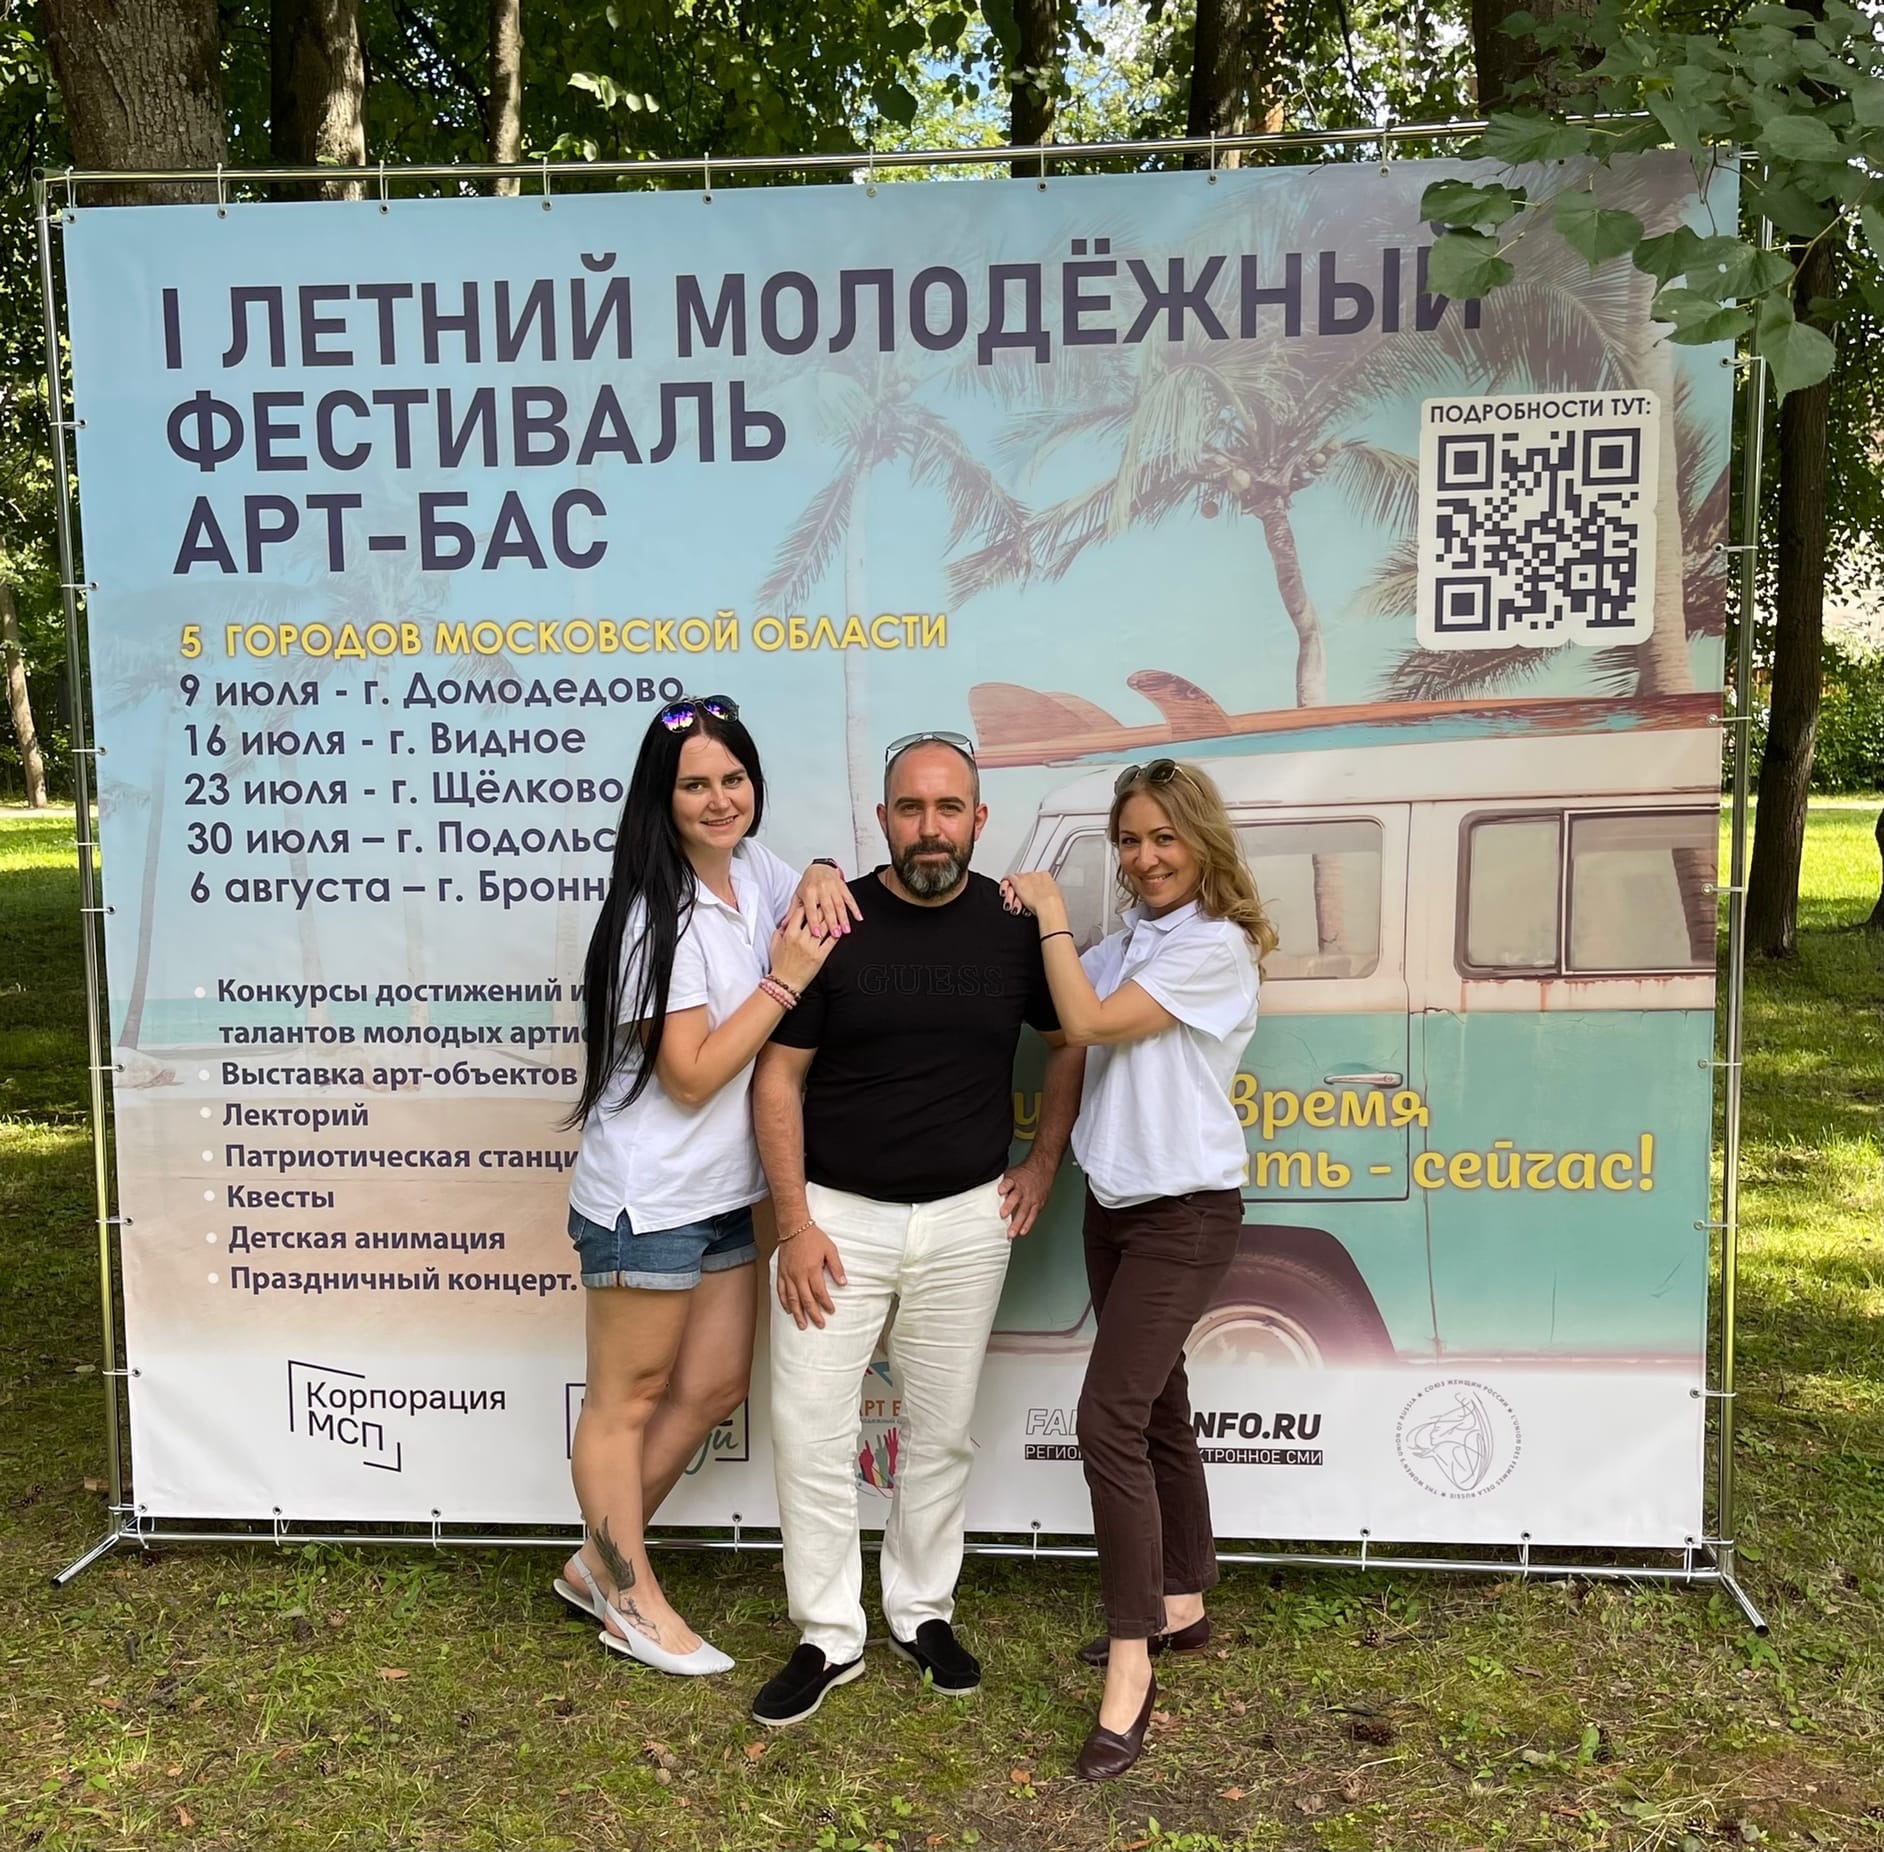 Молодёжный фестиваль «АРТ БАС» пройдёт в Подольске 